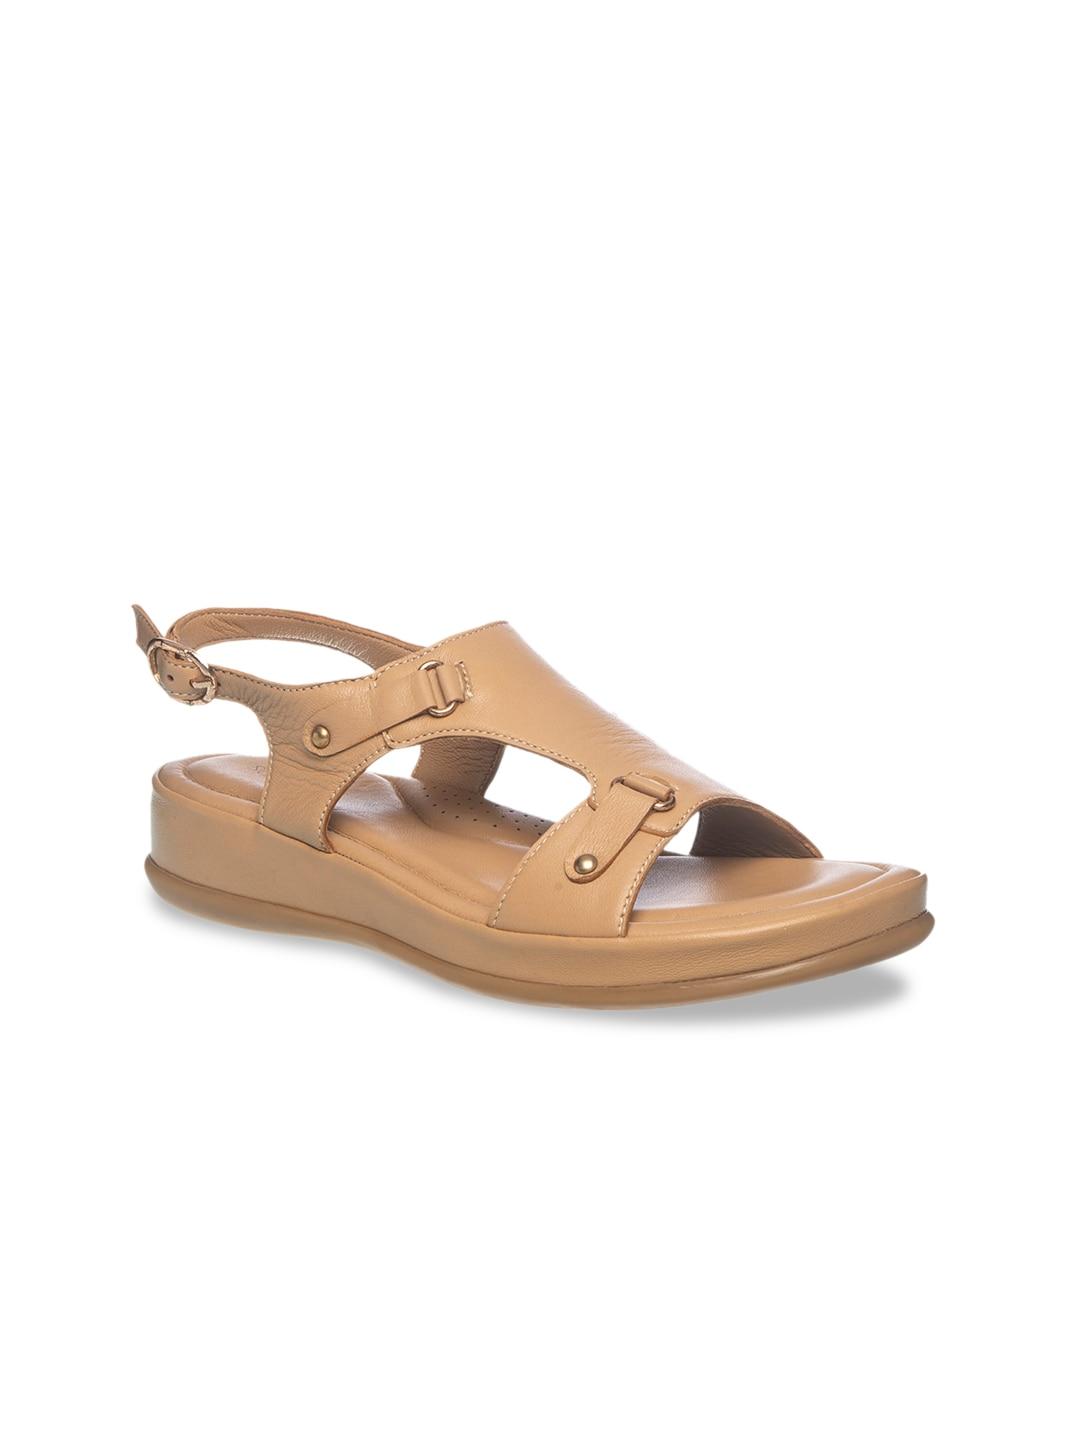 khadims-women-beige-solid-leather-comfort-heels